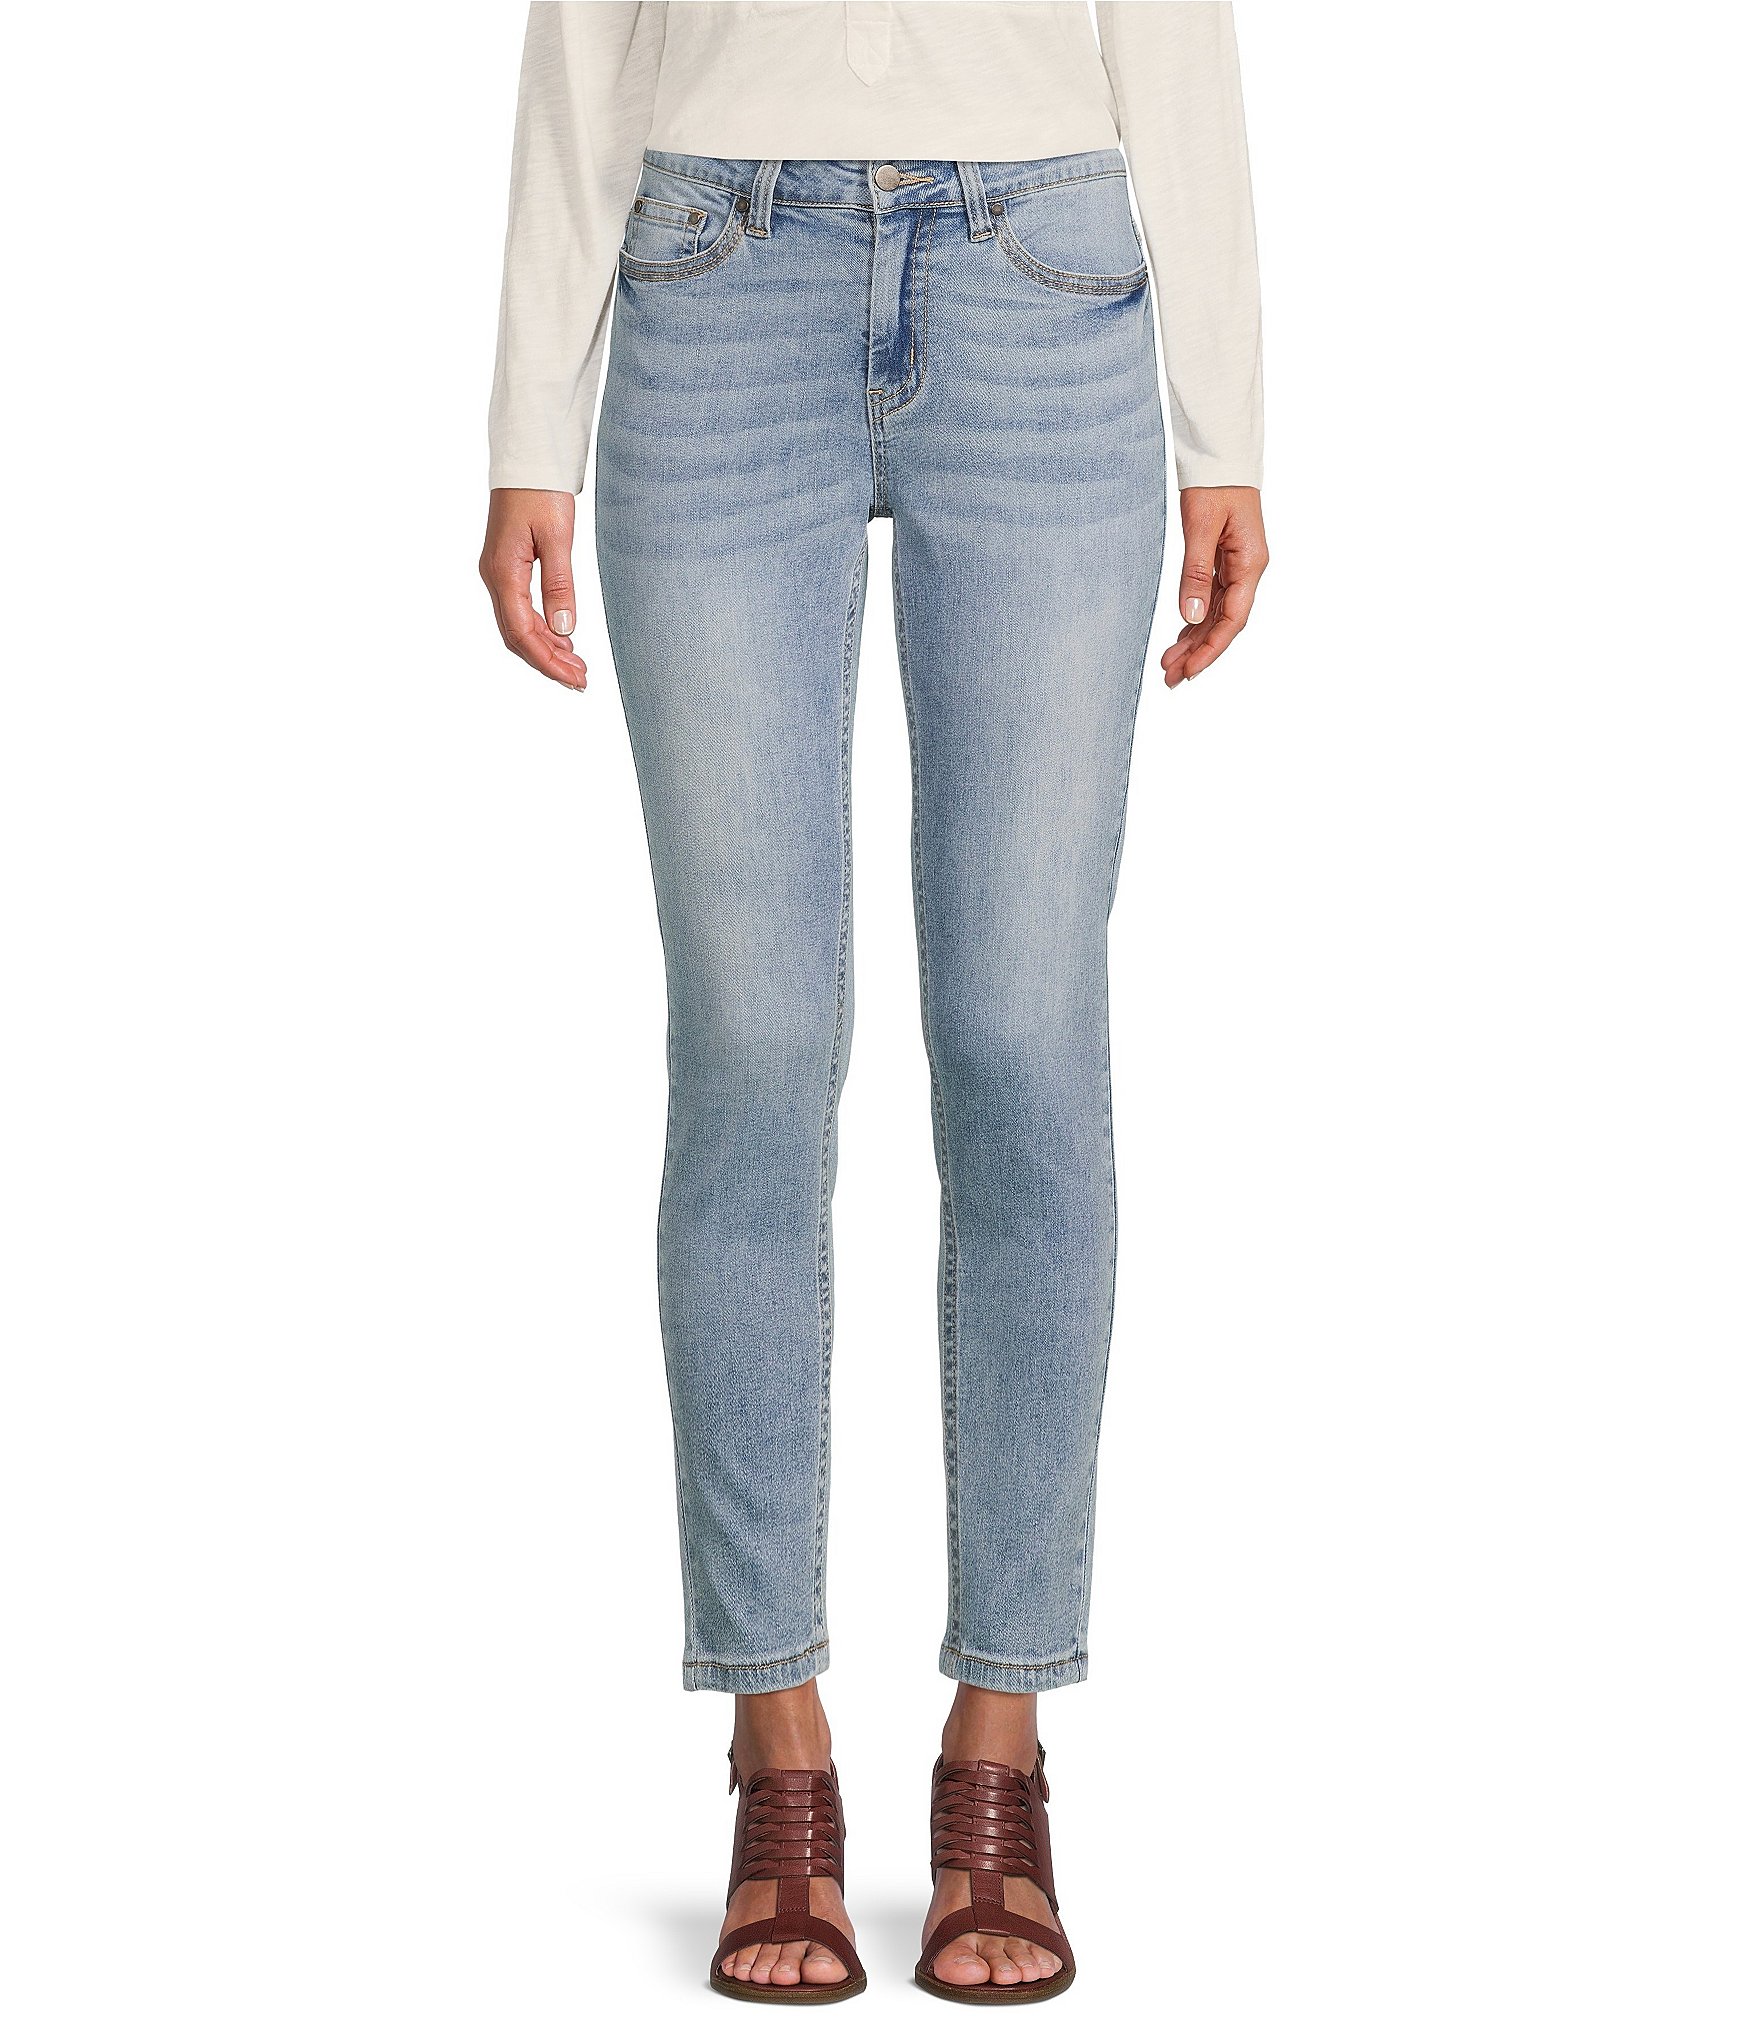 Reba Tanya Ankle Skinny Denim Jeans | Dillard's